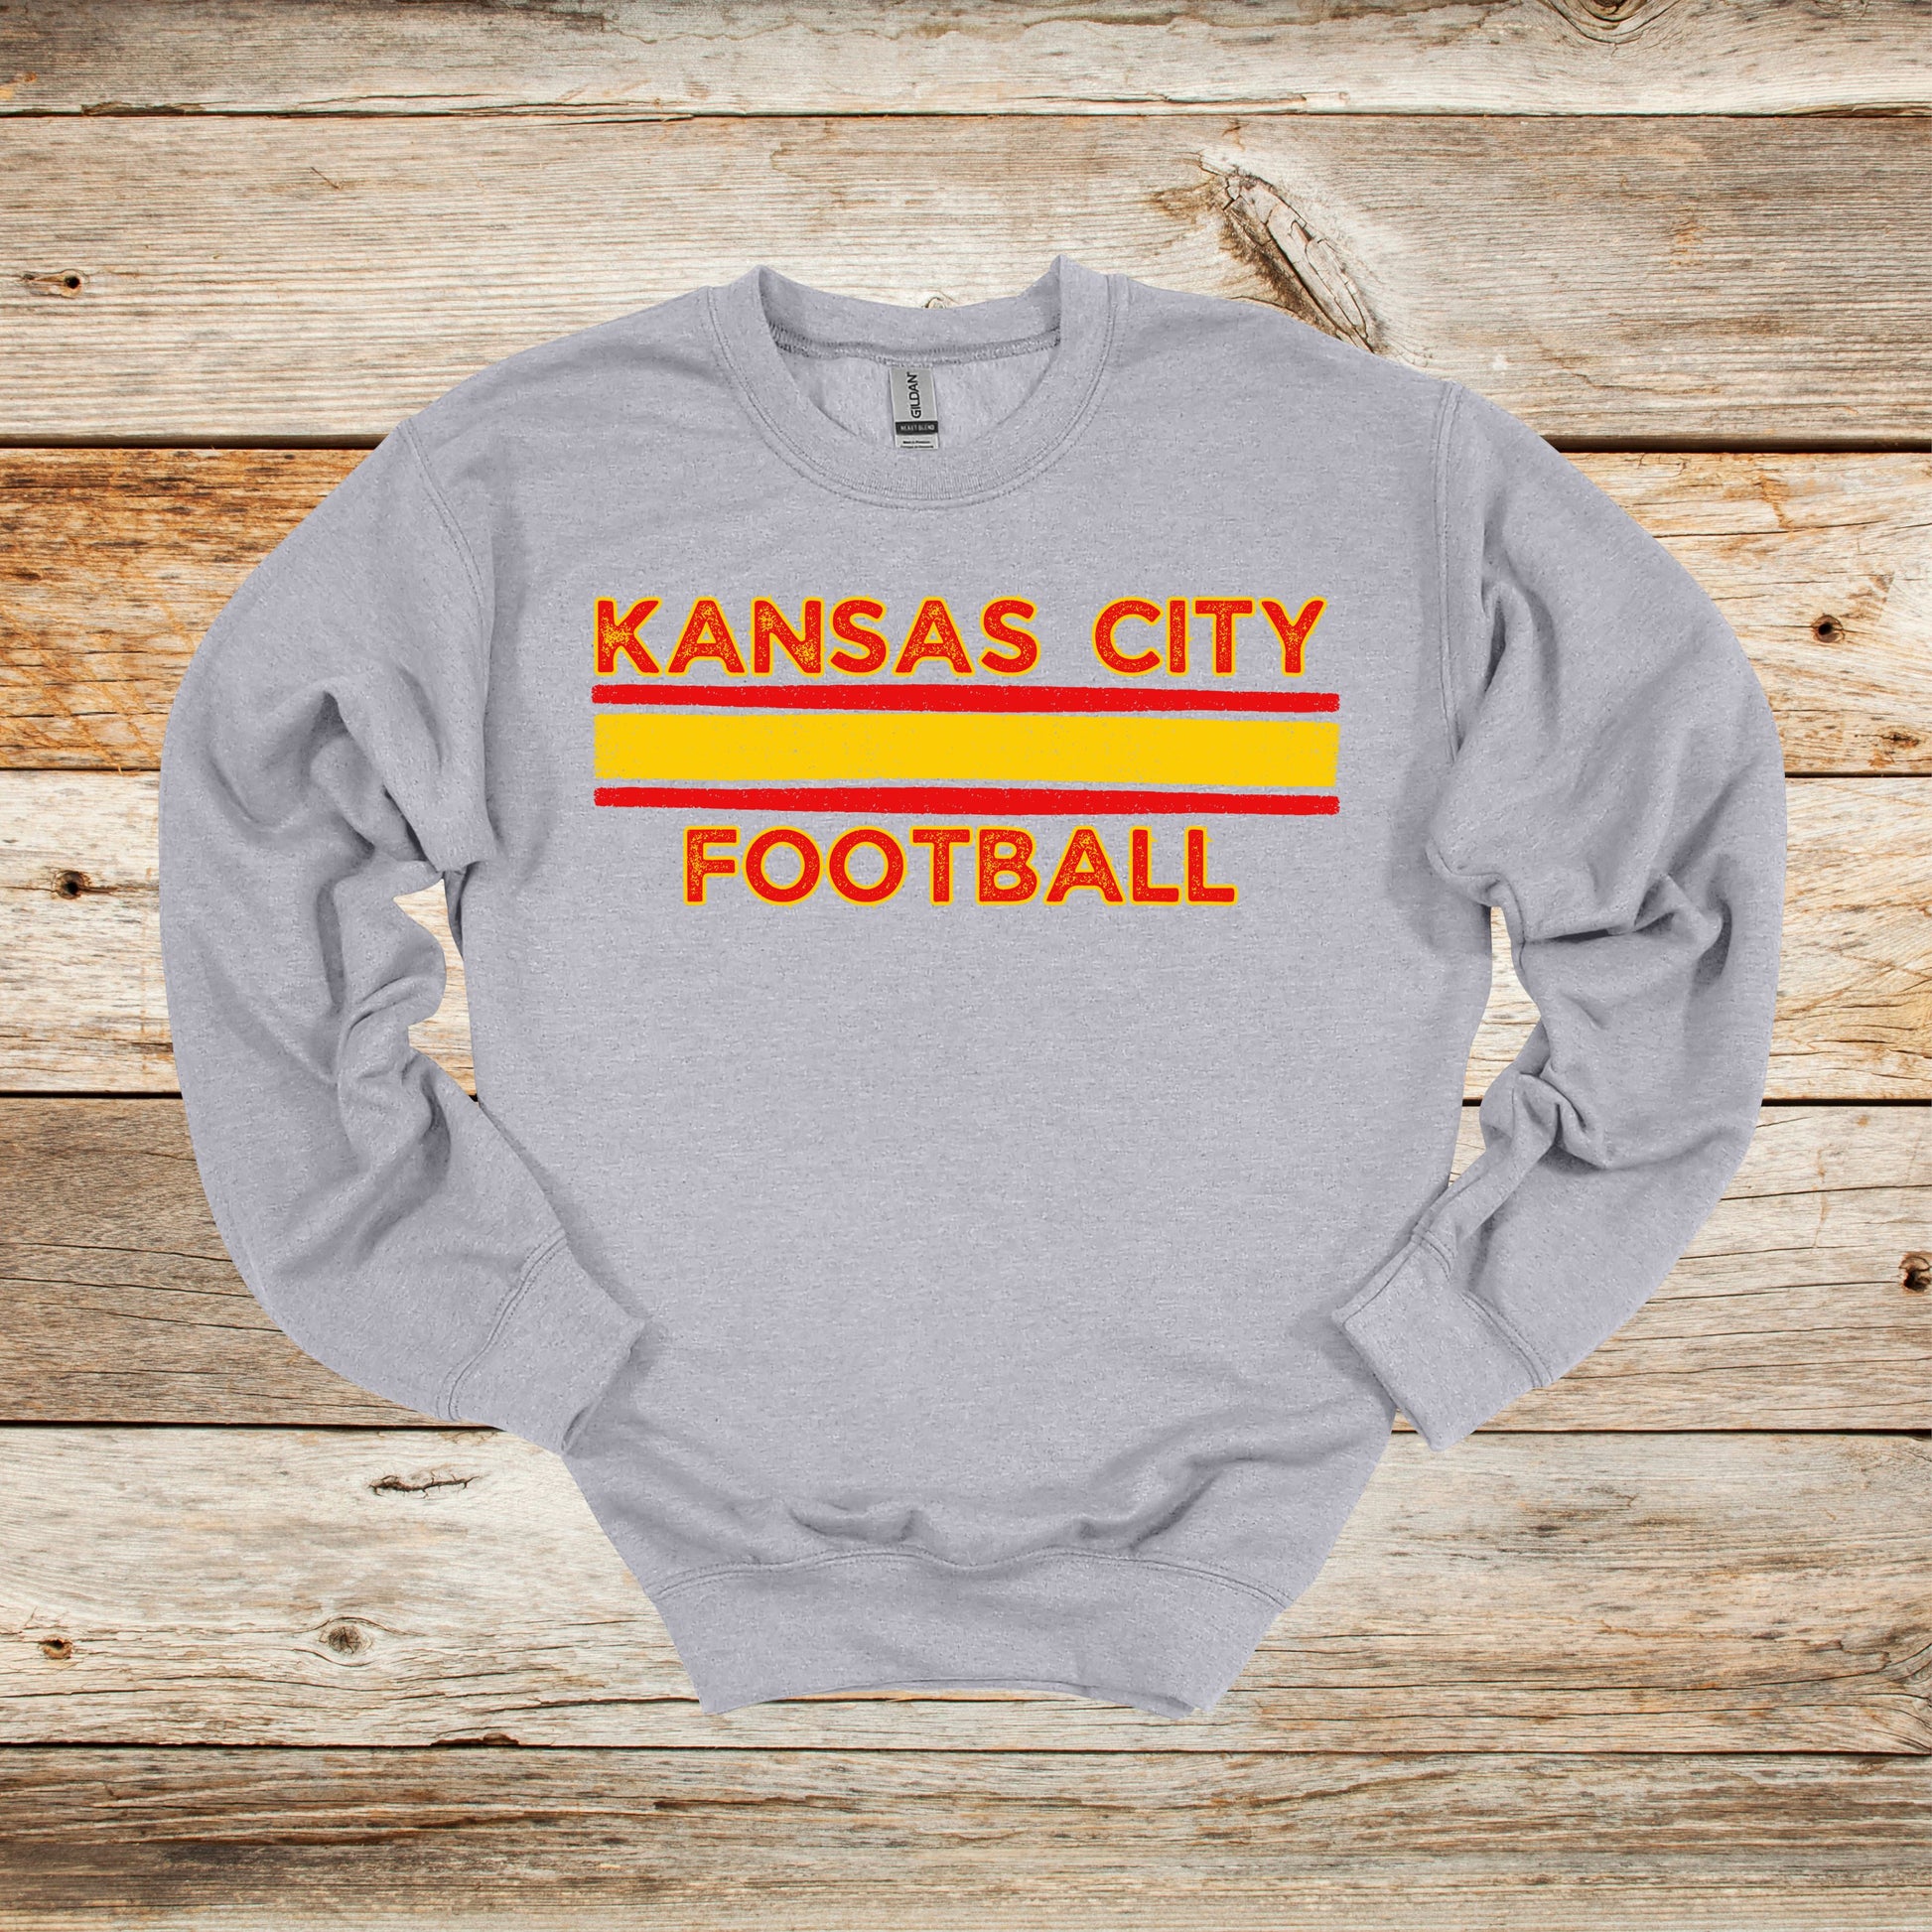 Football Crewneck and Hooded Sweatshirt - Kansas City Chiefs - Kansas City Football - Adult and Children's Tee Shirts - Sports Hooded Sweatshirt Graphic Avenue Crewneck Sweatshirt Sport Grey Adult Small